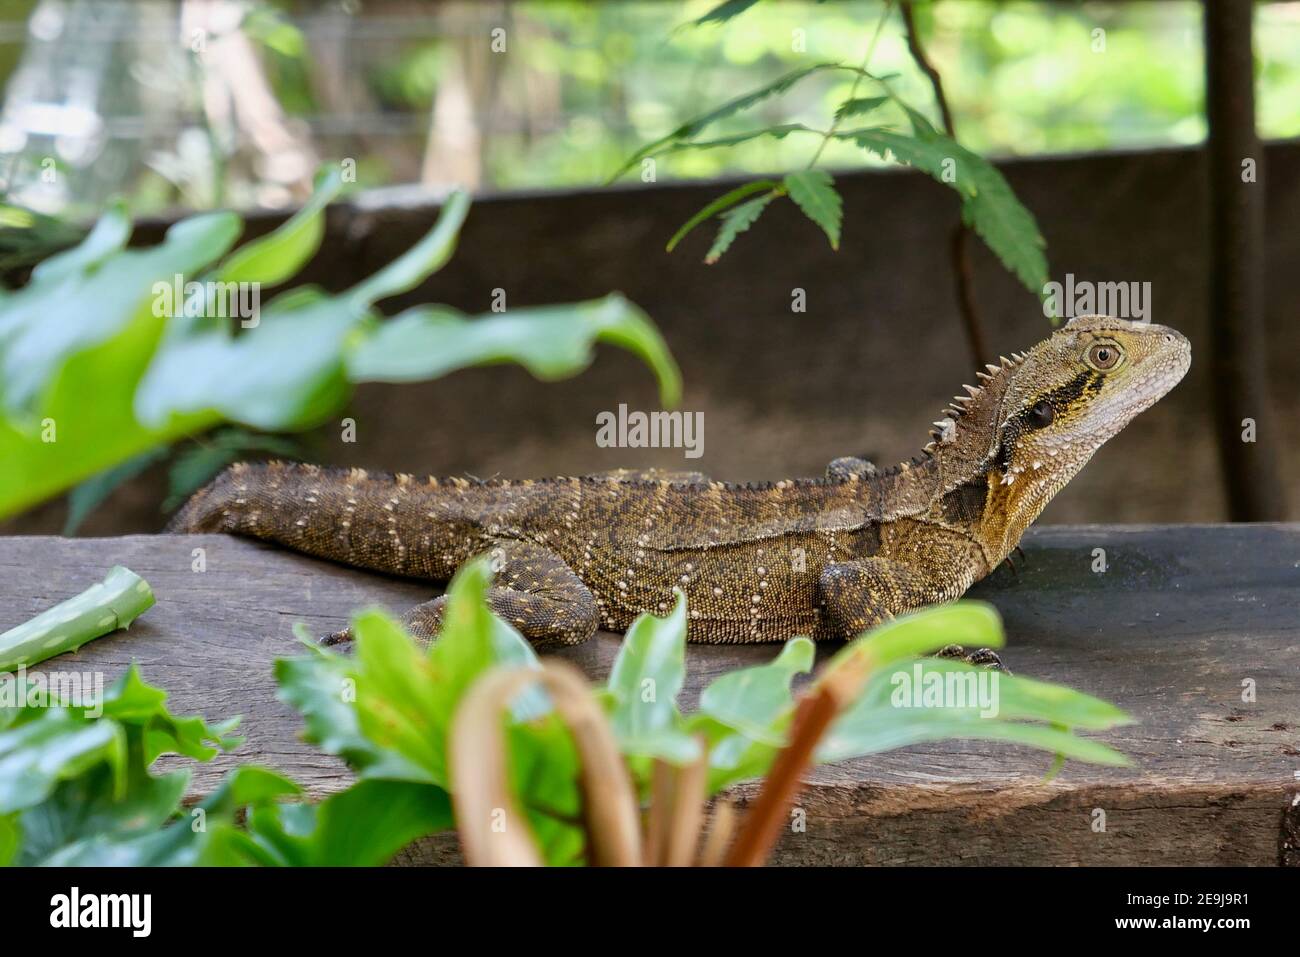 A curious lizard in the garden Stock Photo